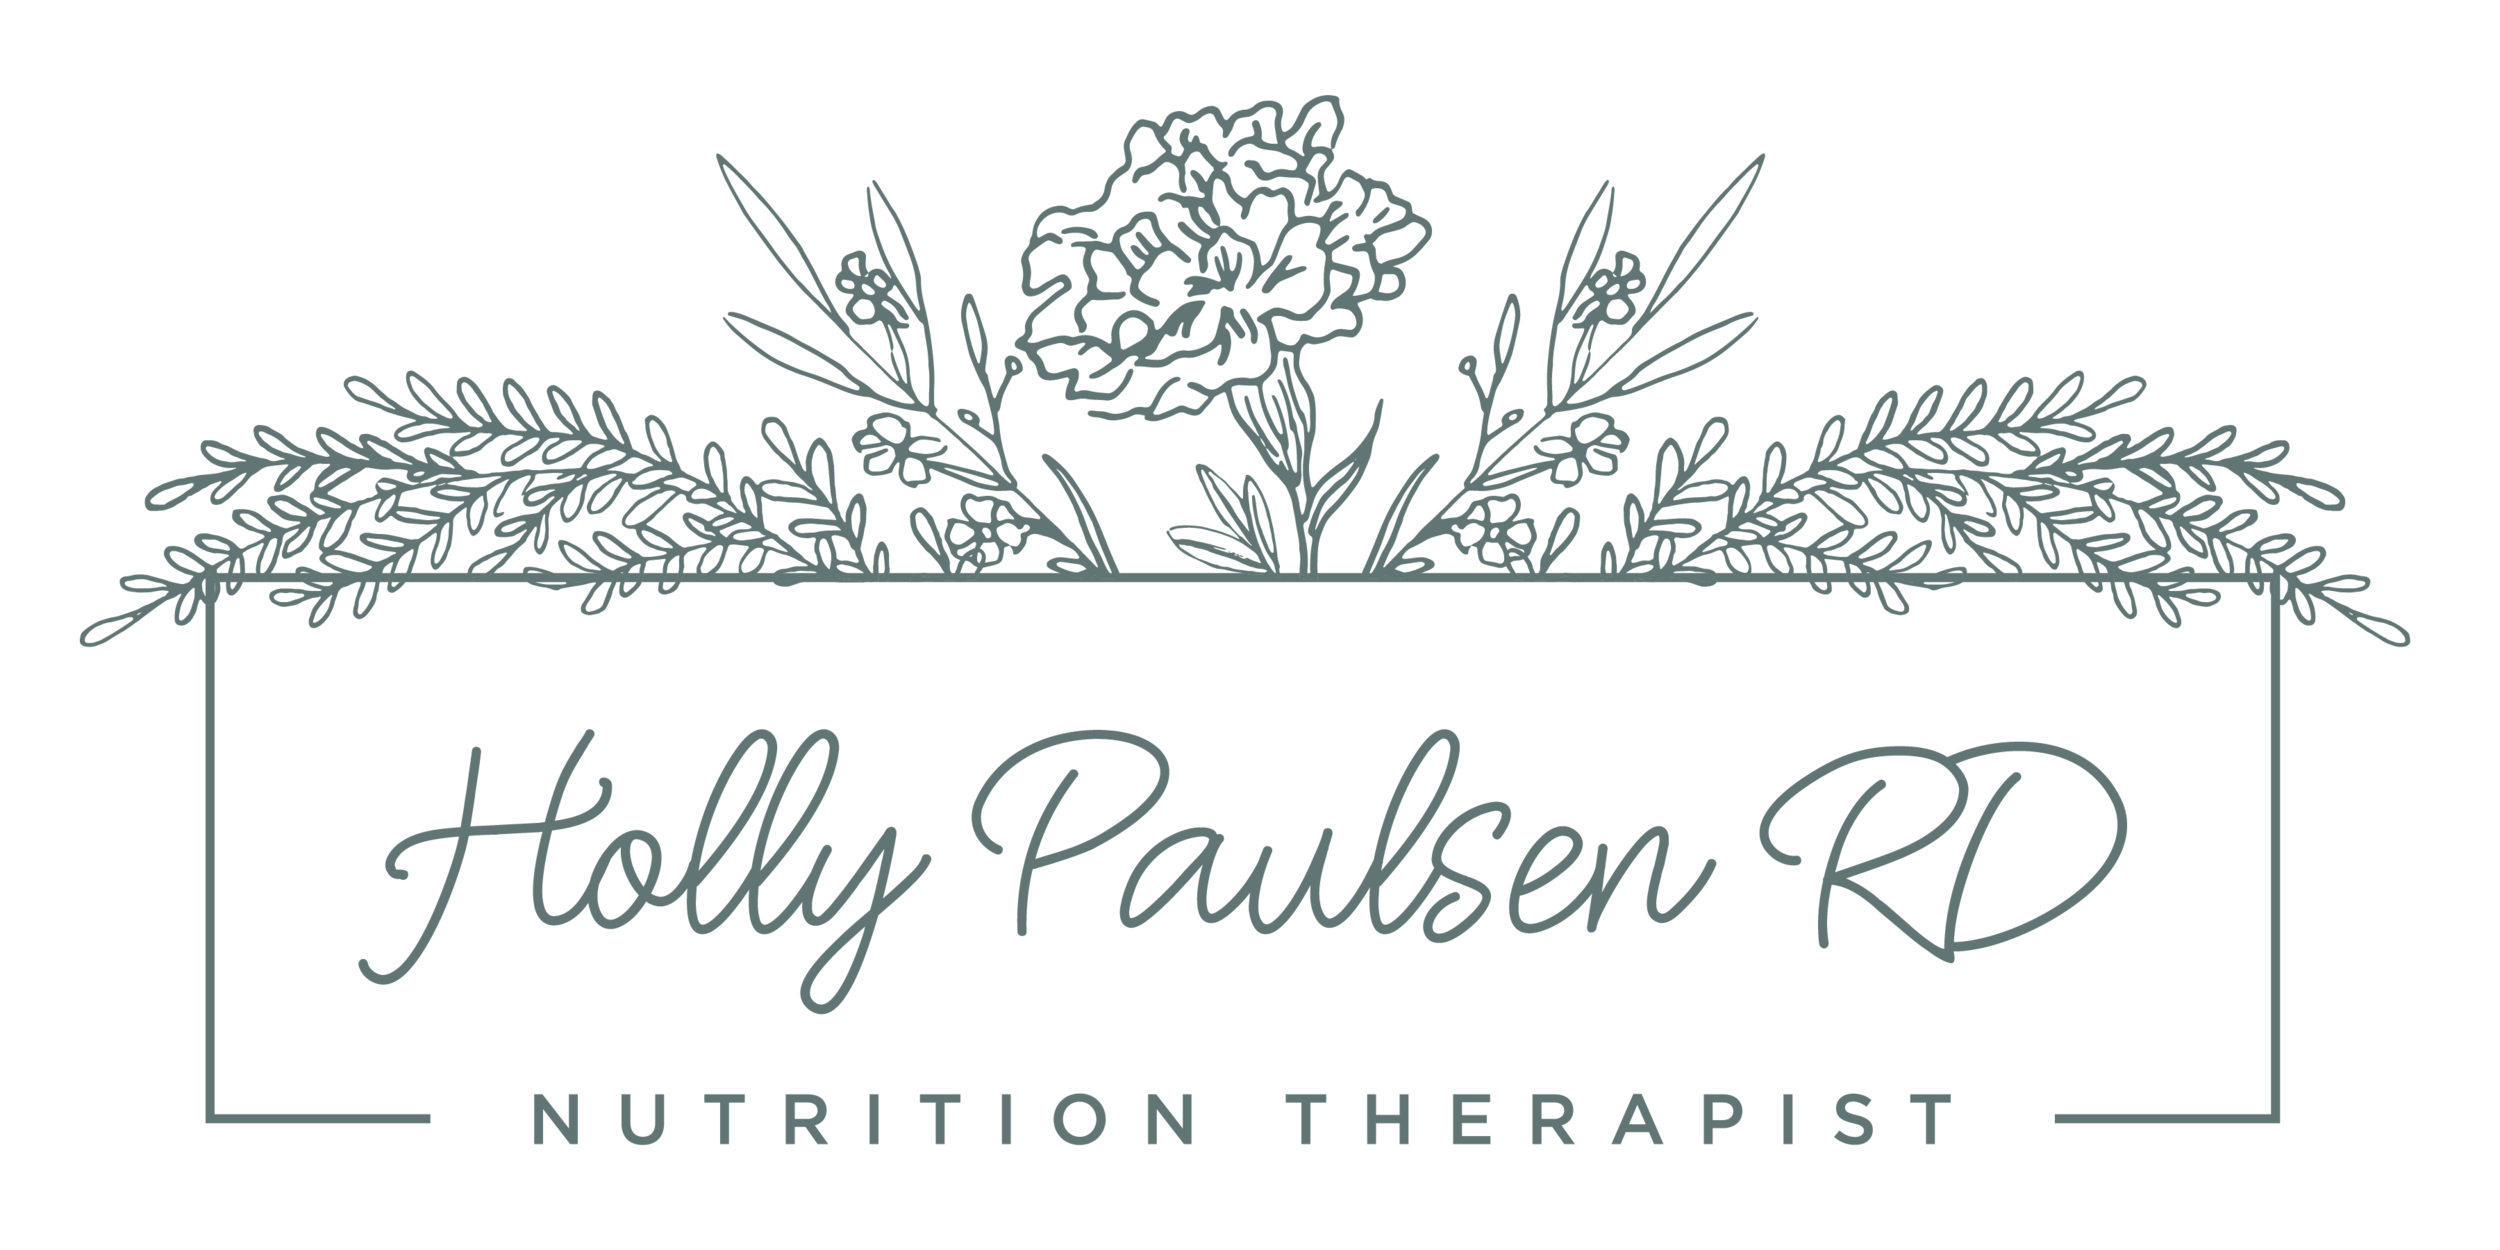 Holly Paulsen RD, Nutrition Therapist LLC